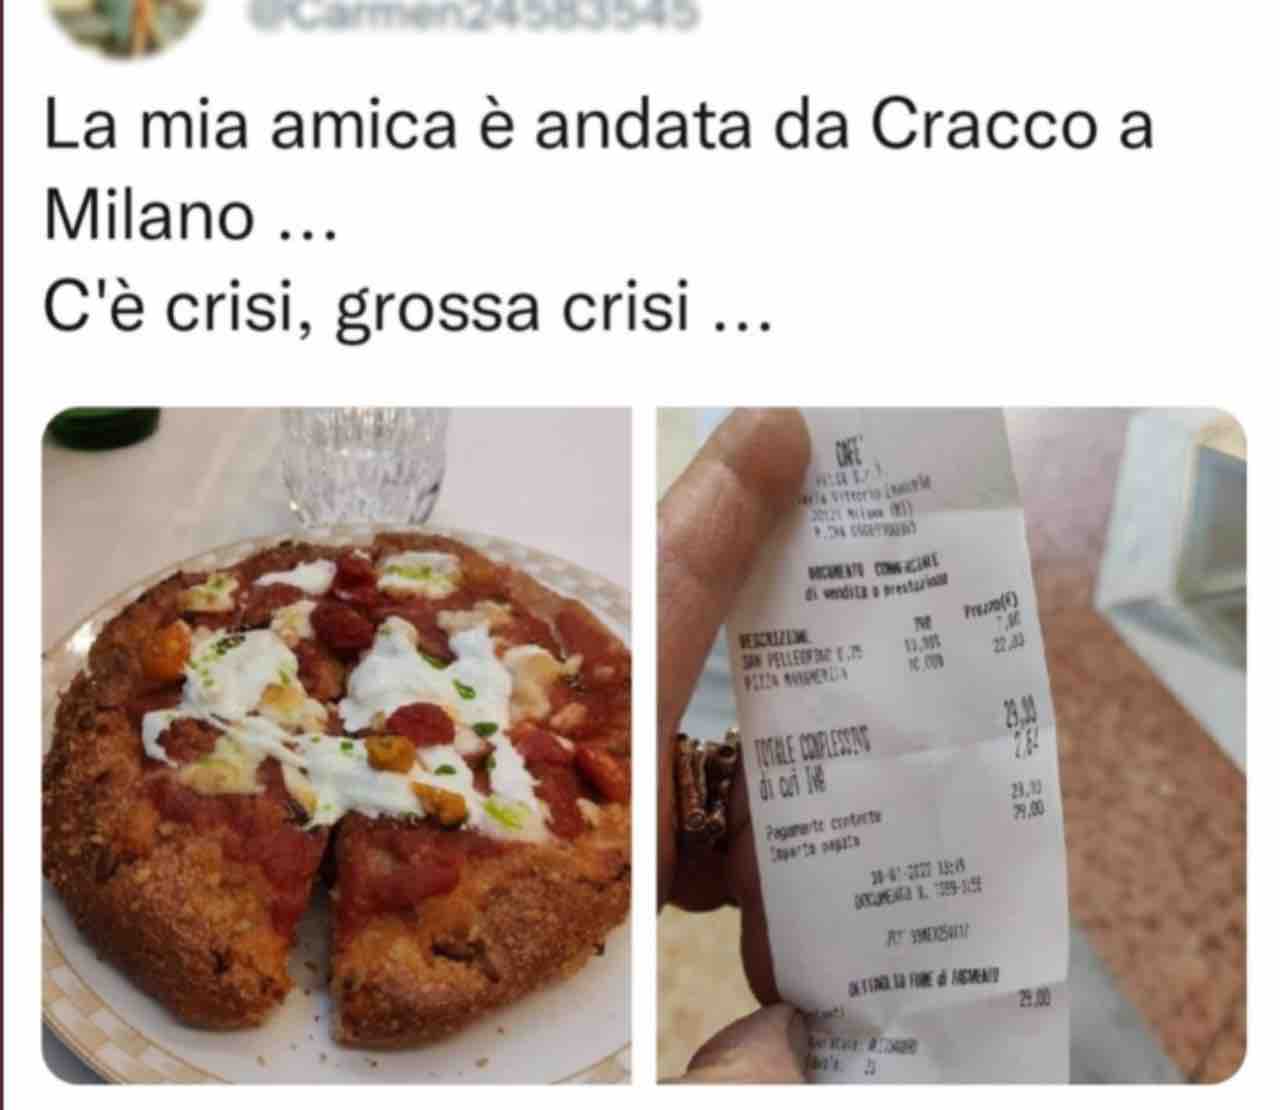 Pizza Carlo cracco